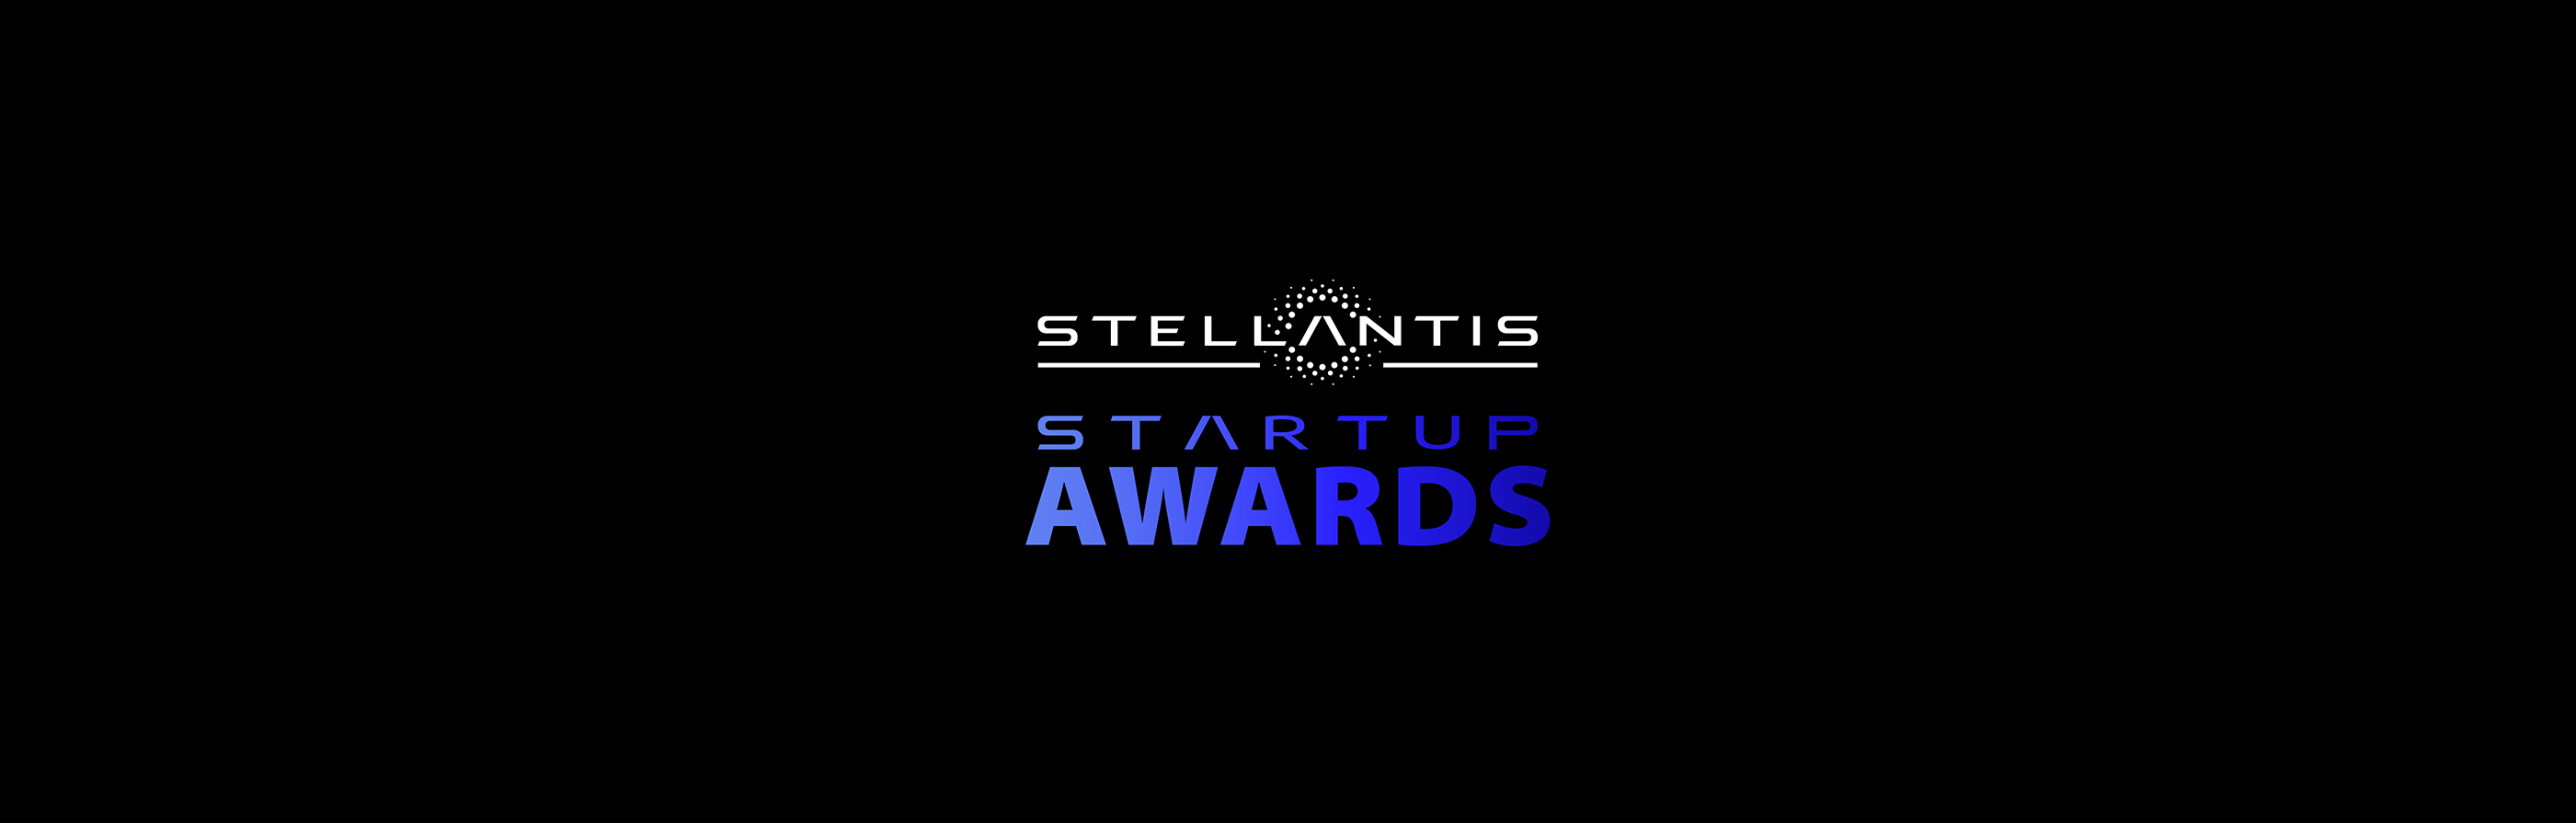 image of Stellantis Startup Awards